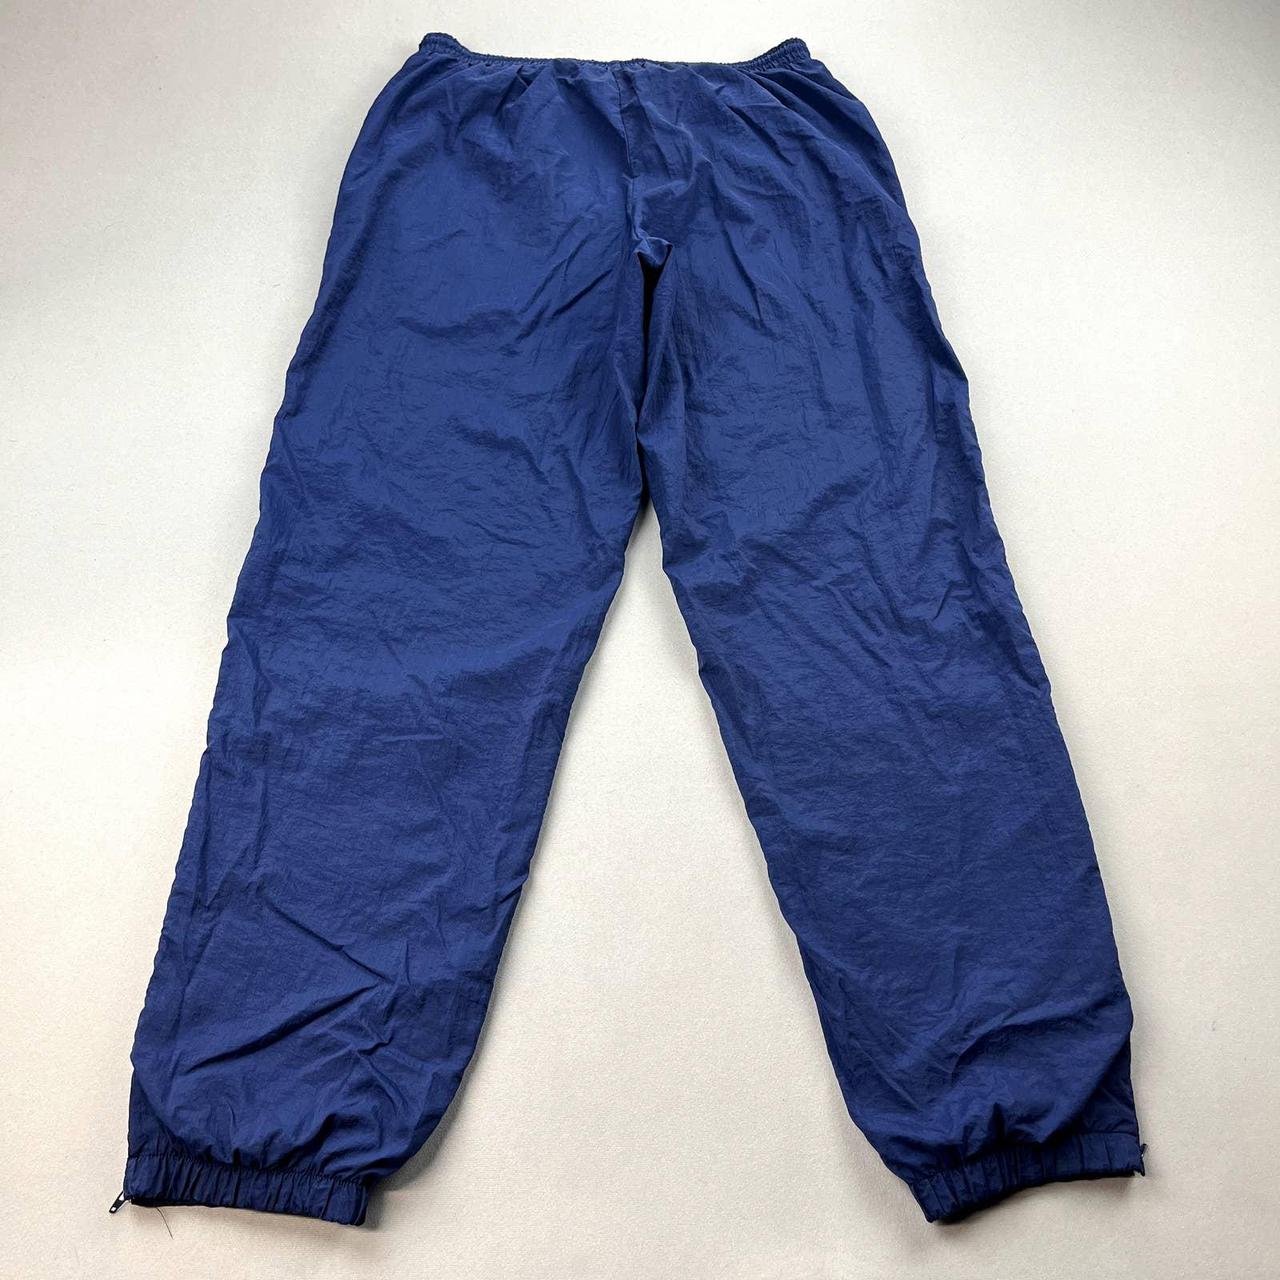 Vintage Nike Track Pants Mens Medium Navy Blue... - Depop